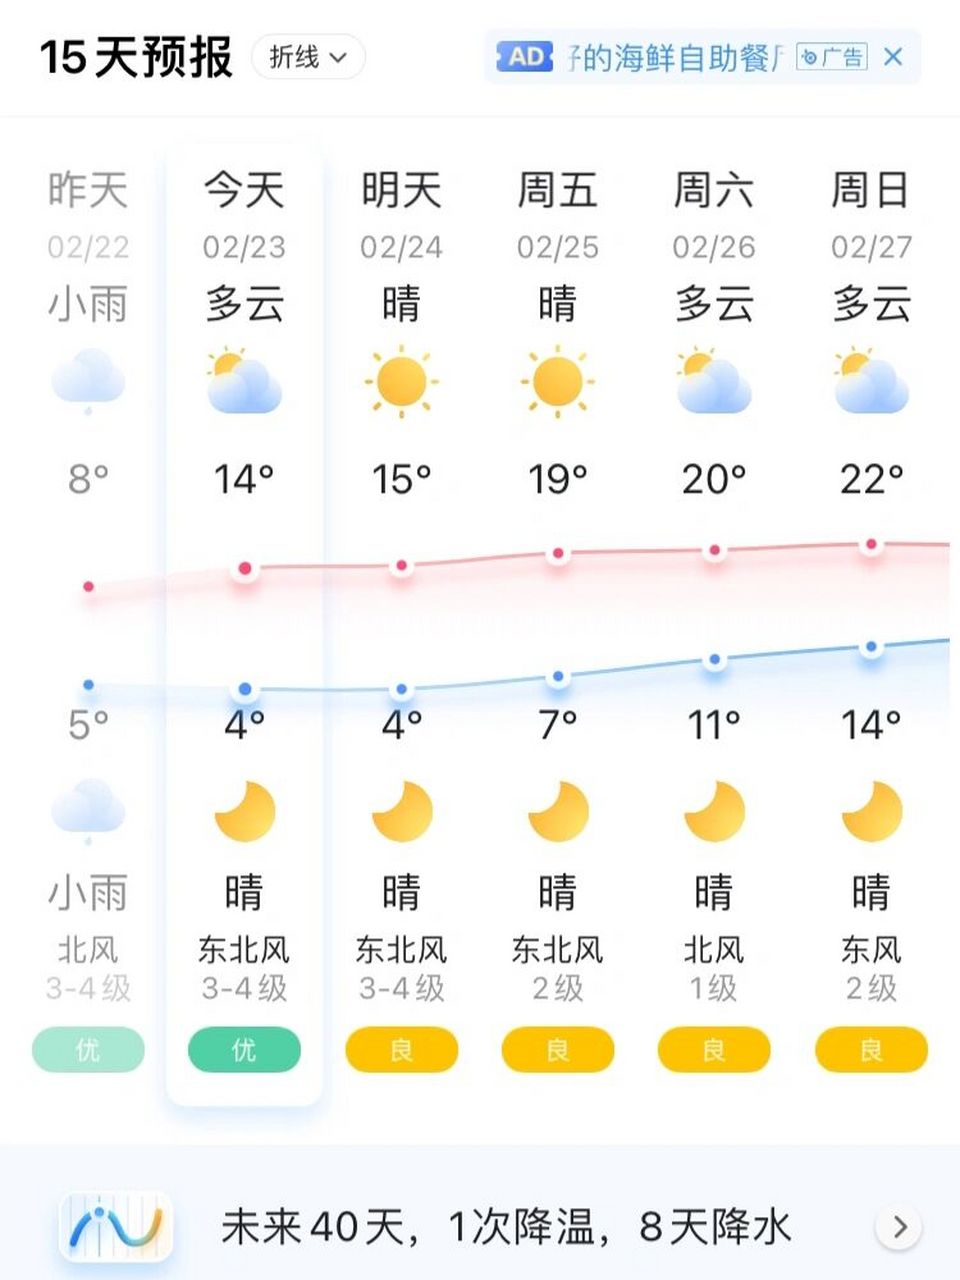 广西玉林天气是真表态 不是说今天回暖吗?